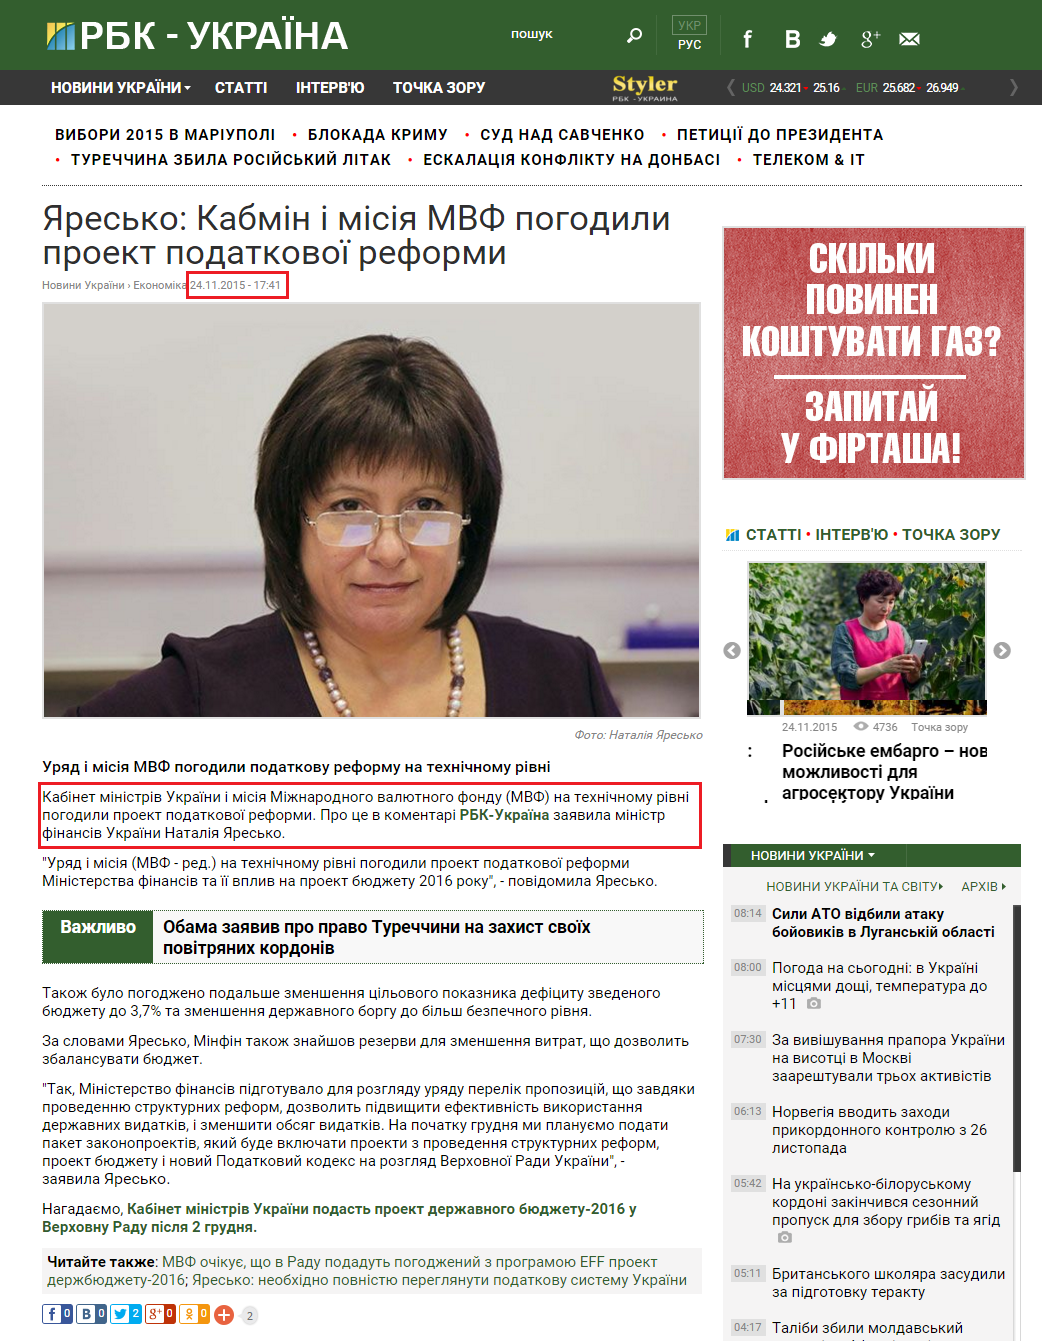 http://www.rbc.ua/ukr/news/resko-kabmin-missiya-mvf-soglasovali-proekt-1448379703.html